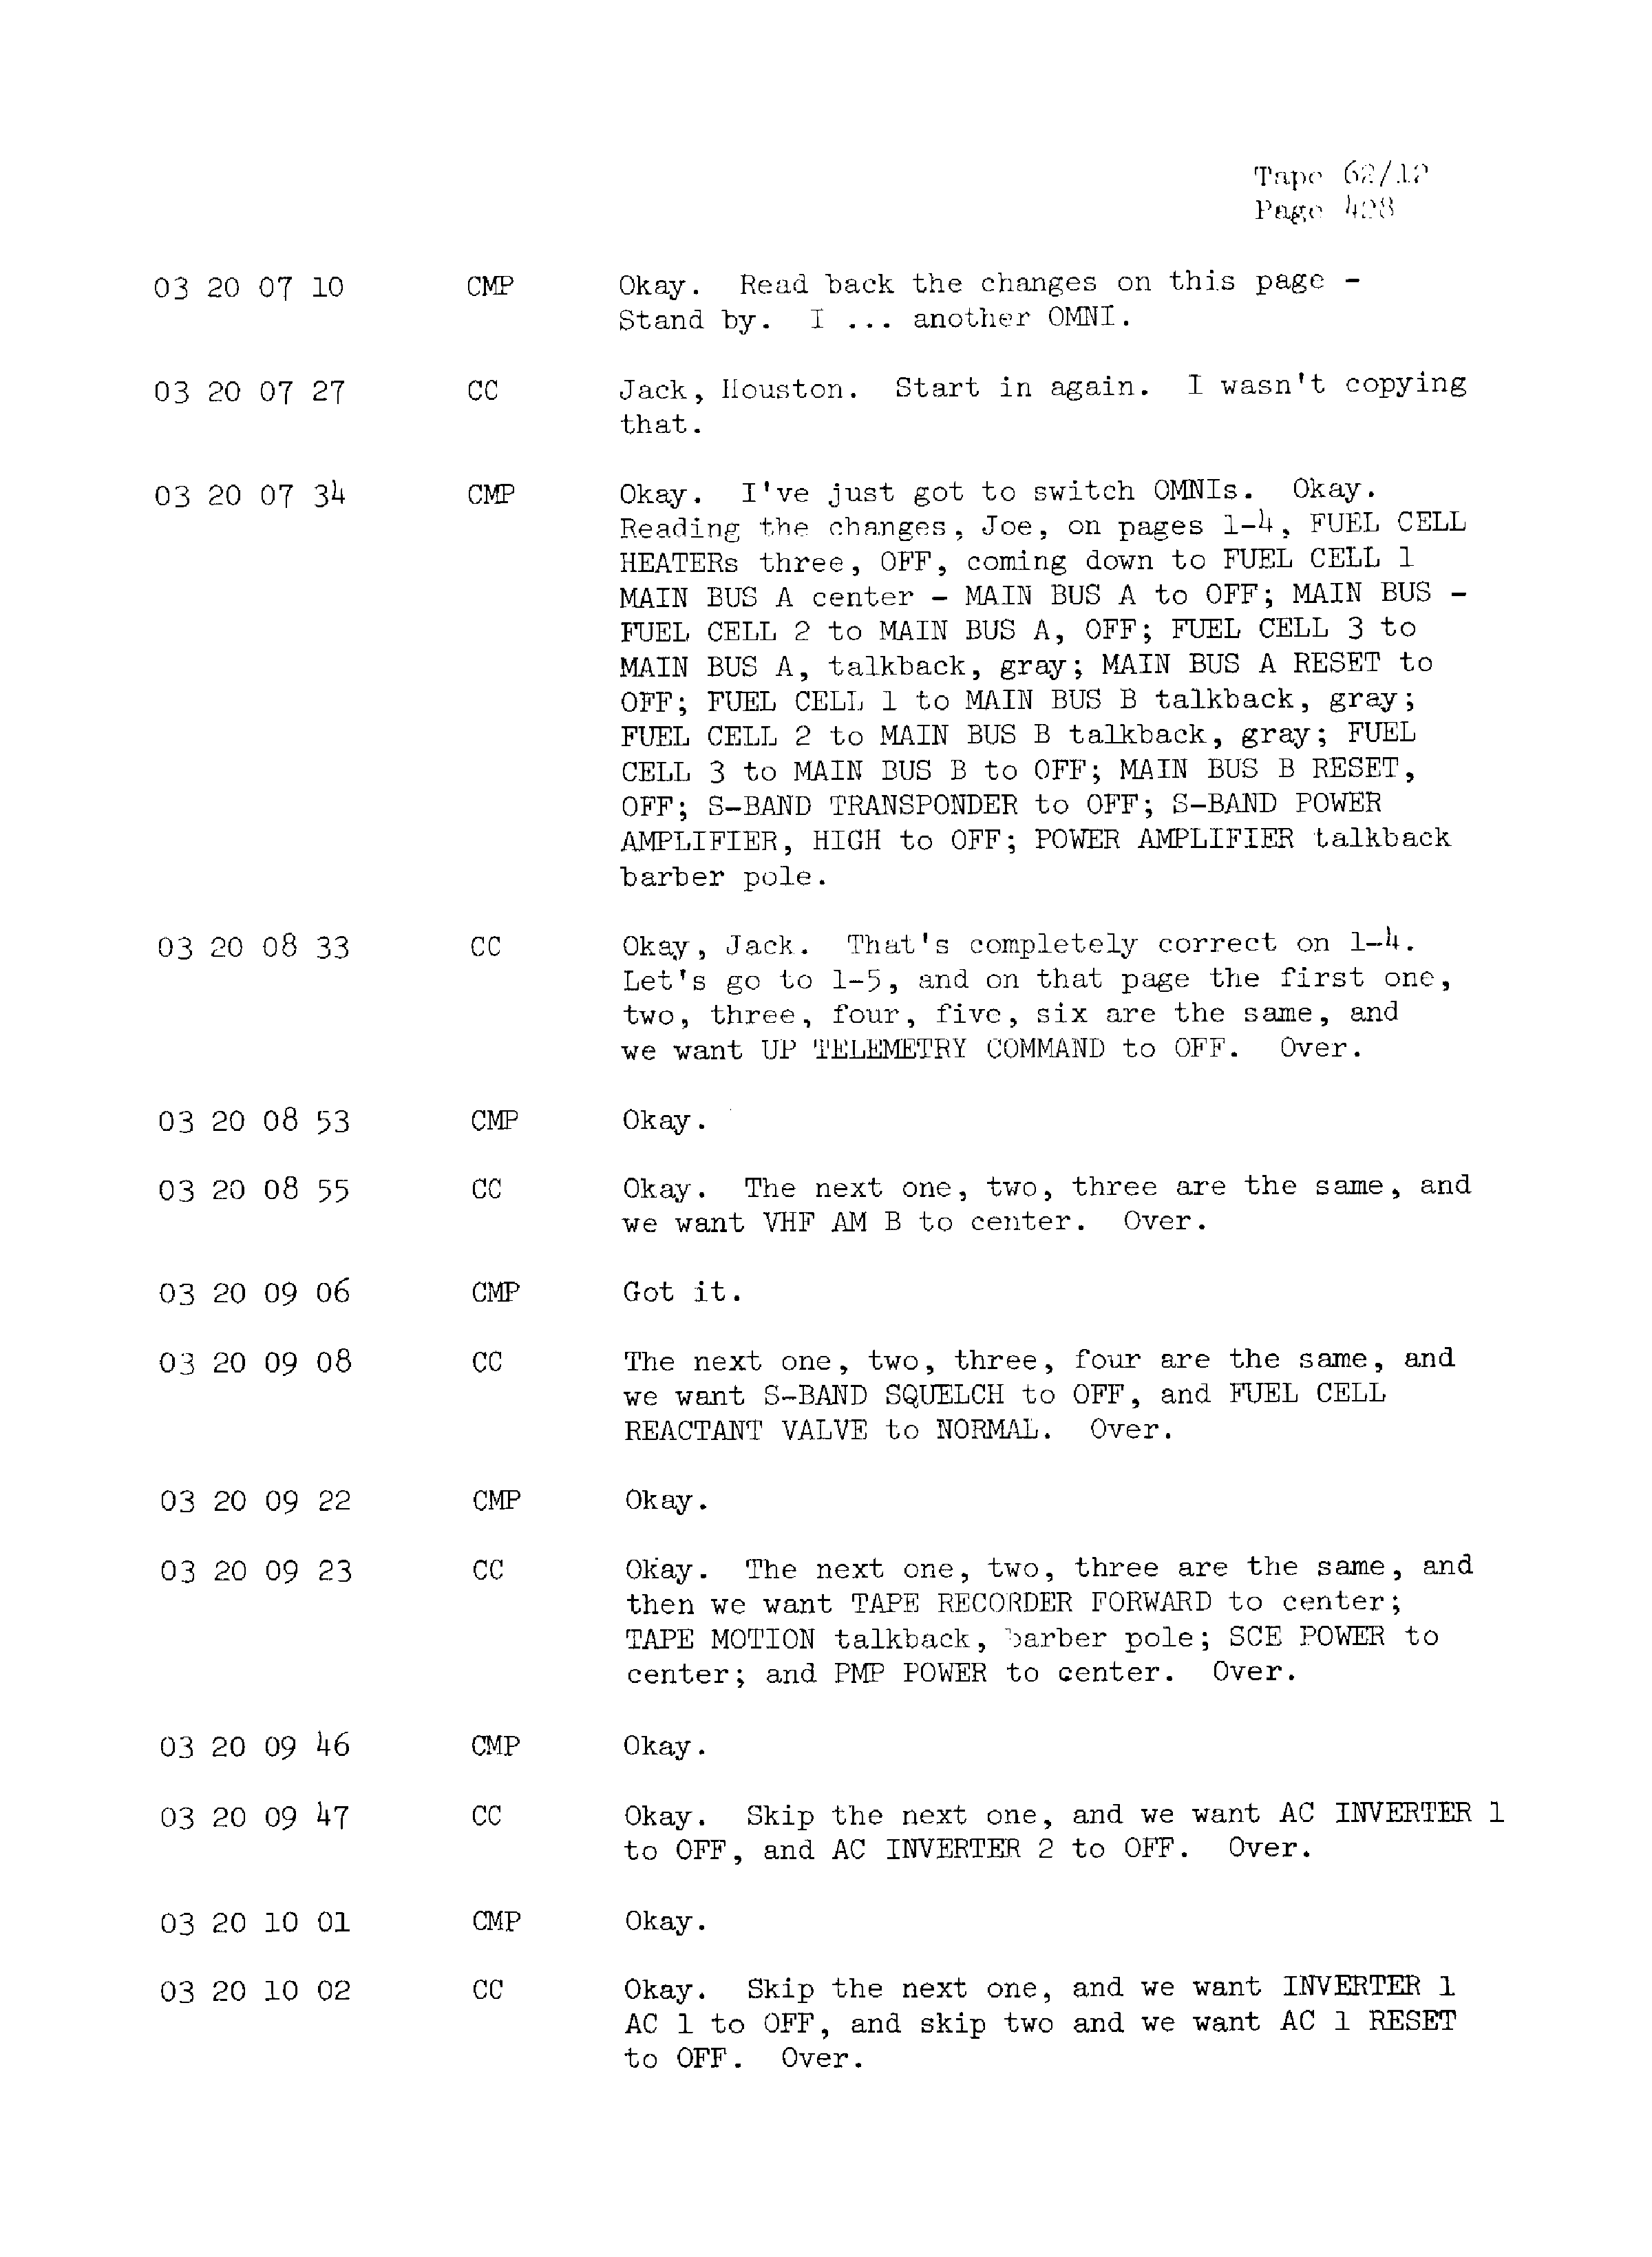 Page 435 of Apollo 13’s original transcript